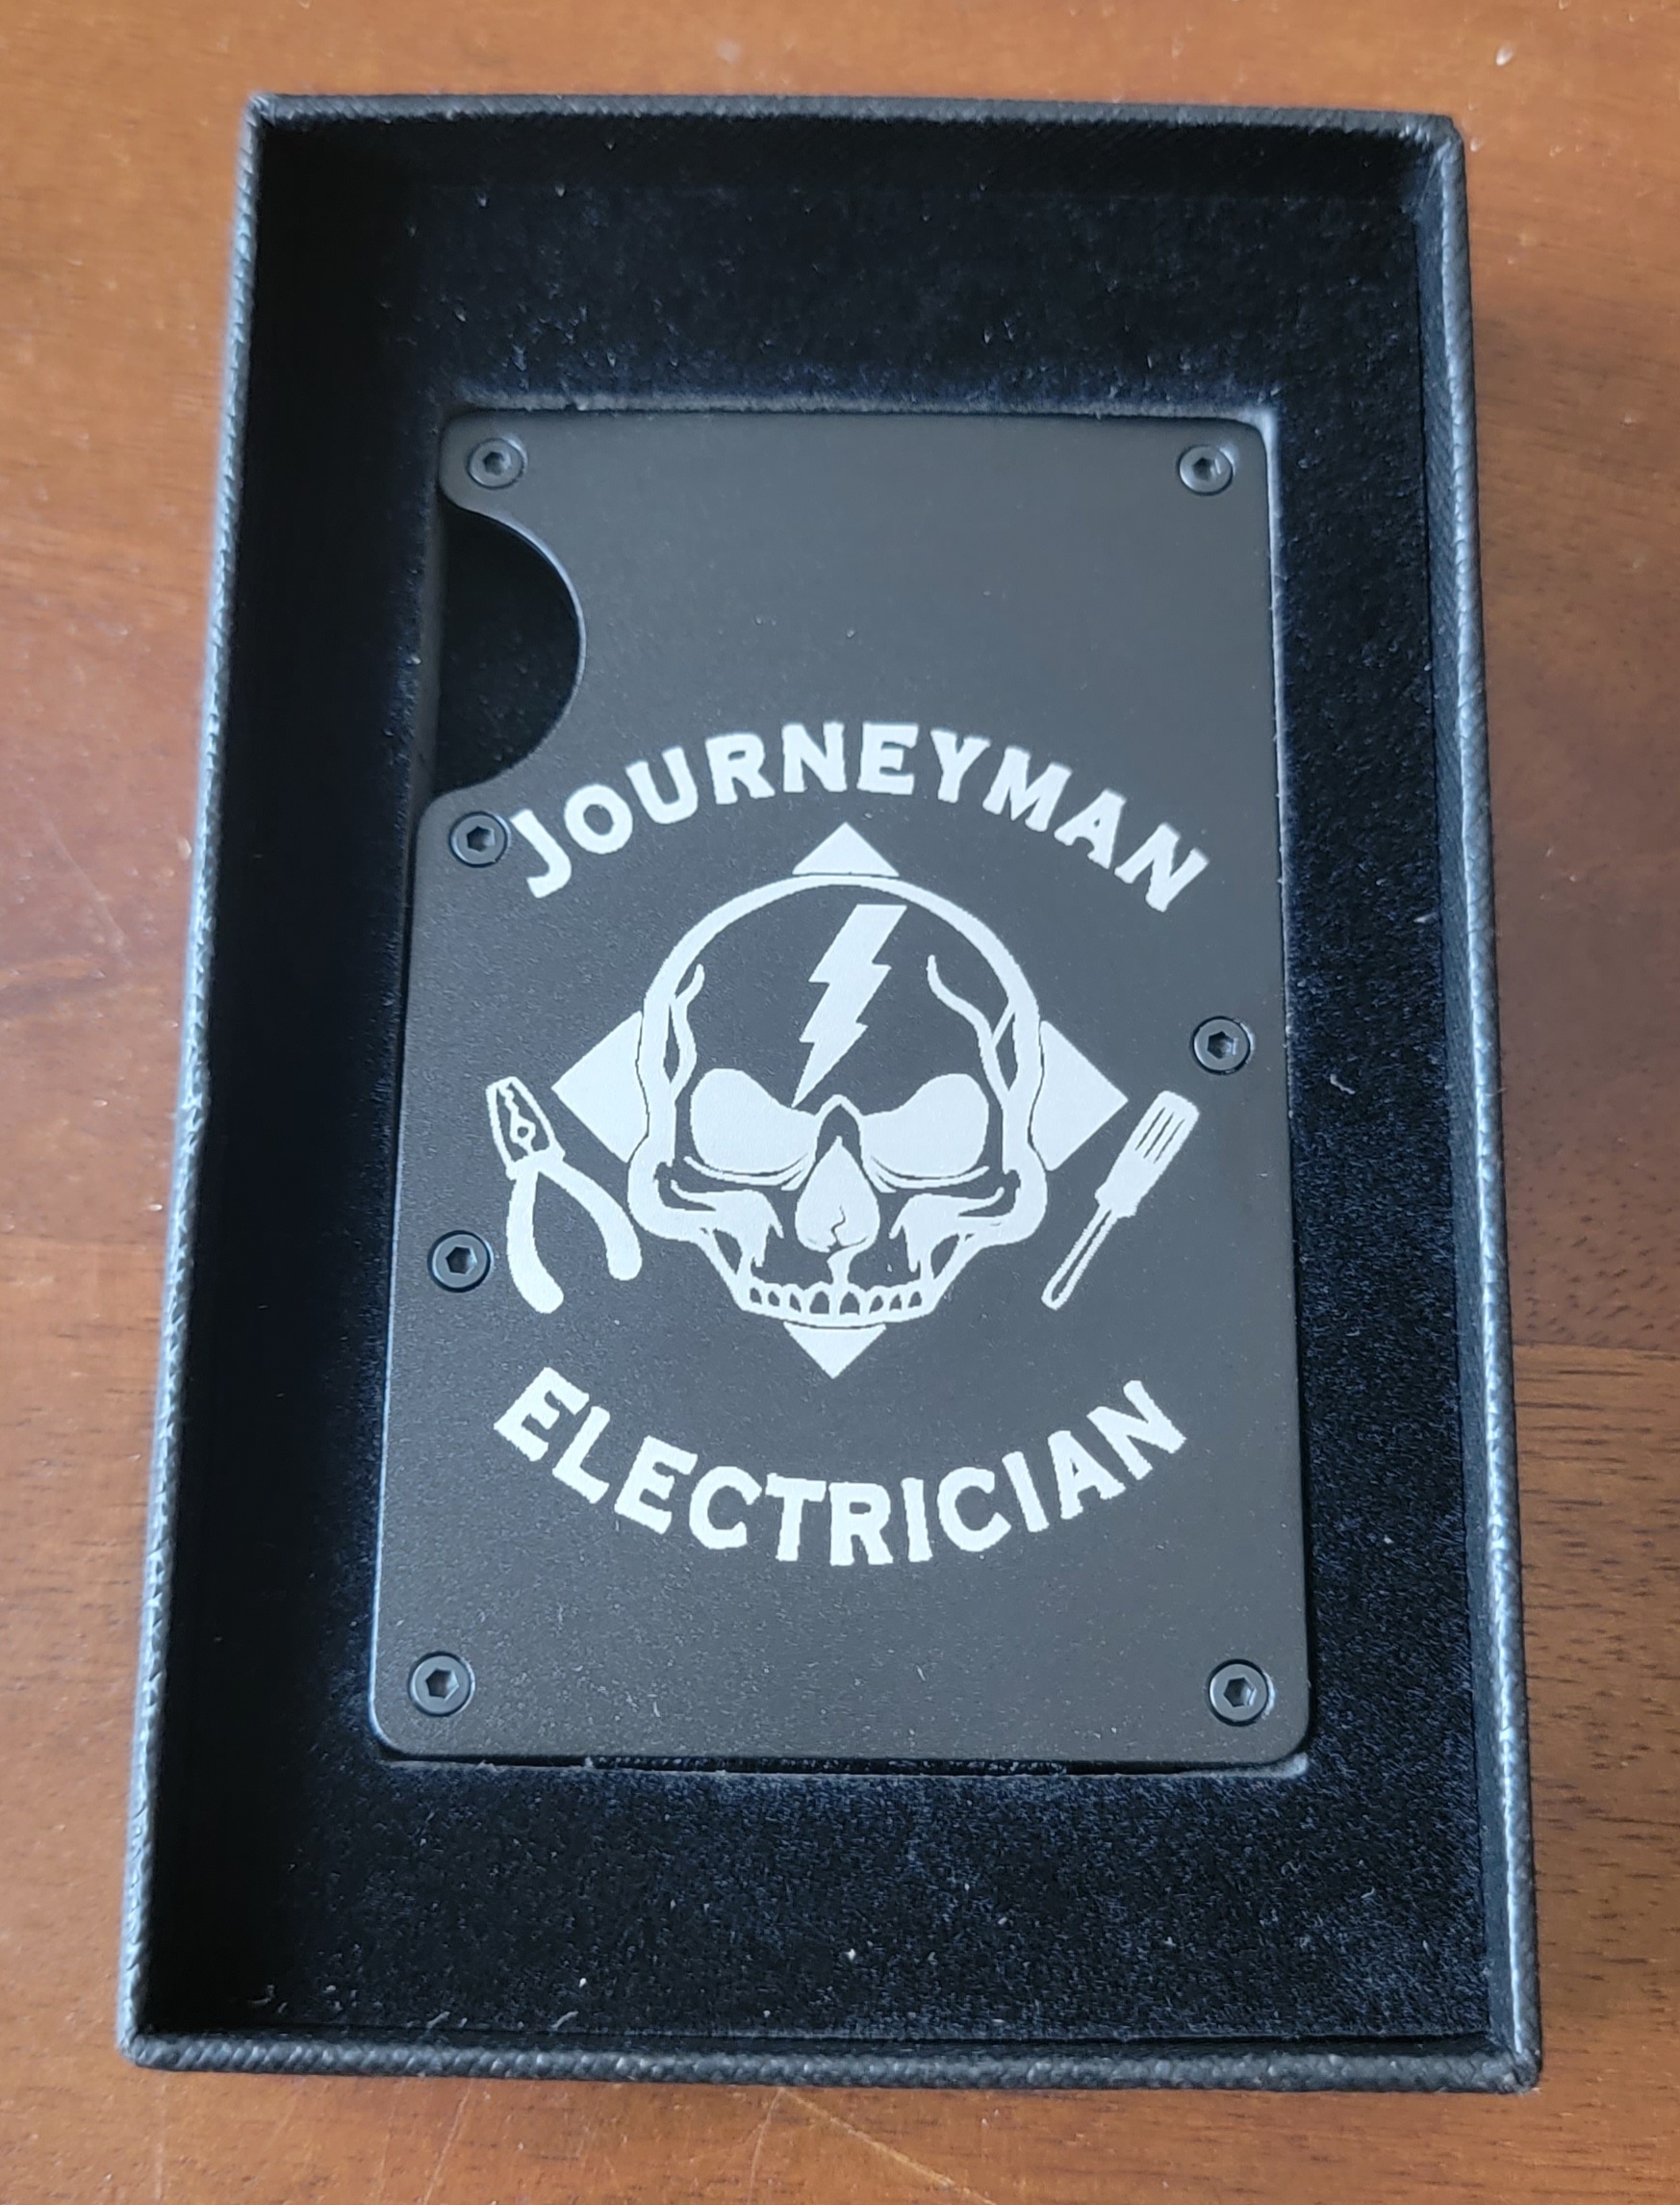 Journeyman Electrician Minimalist Wallet